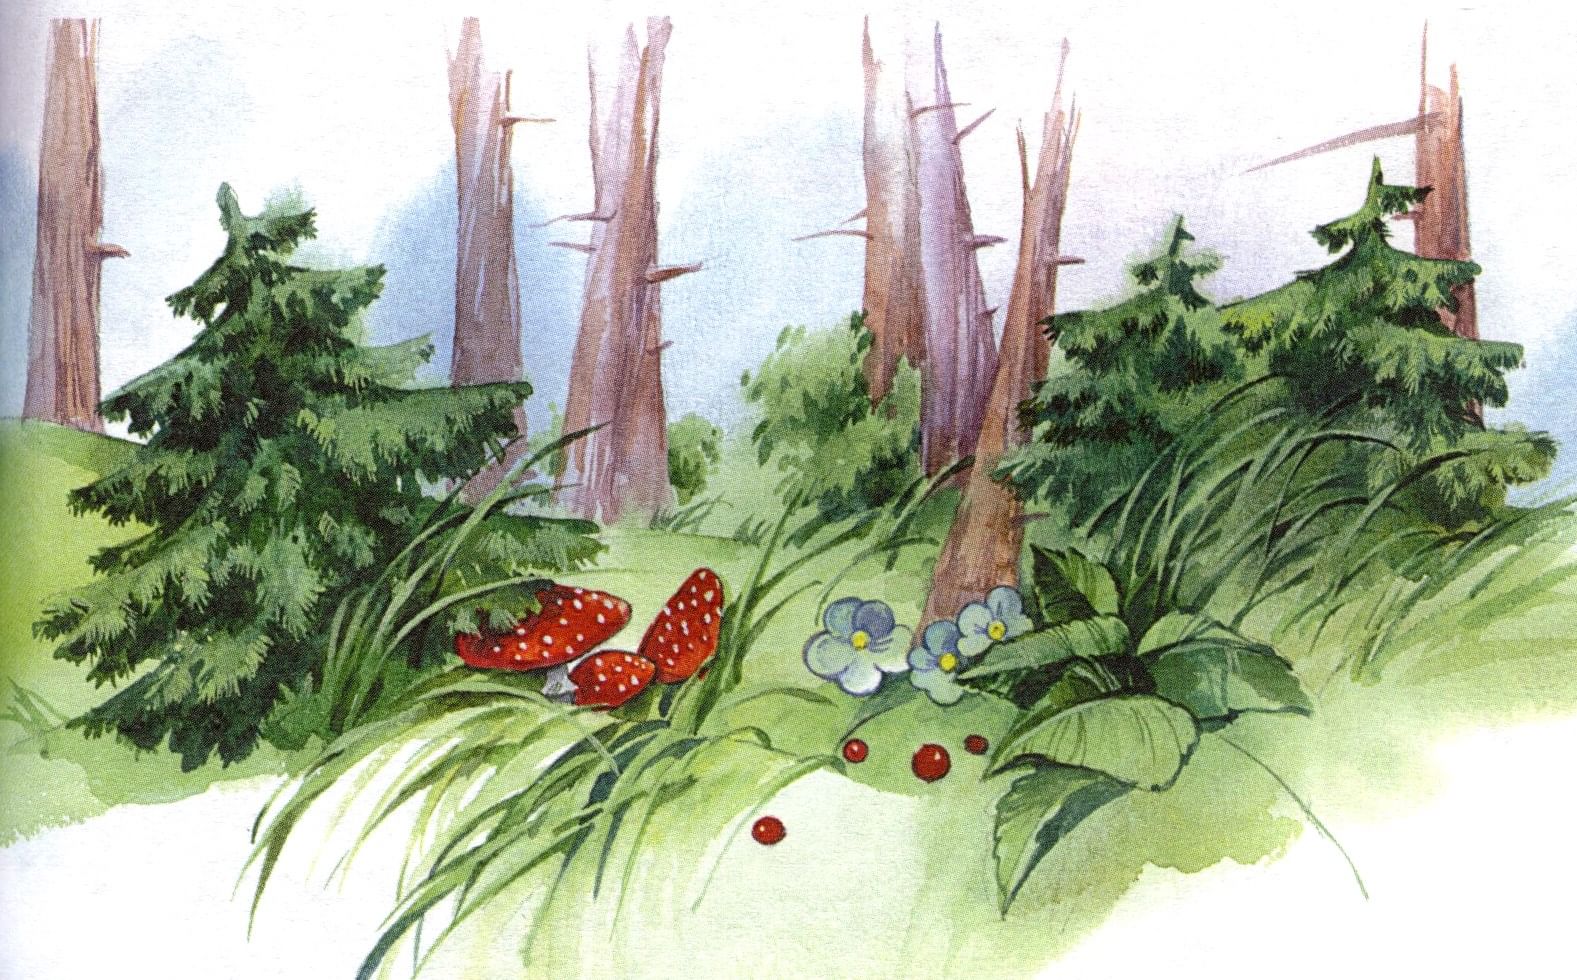 картинки про лес и природу для детей